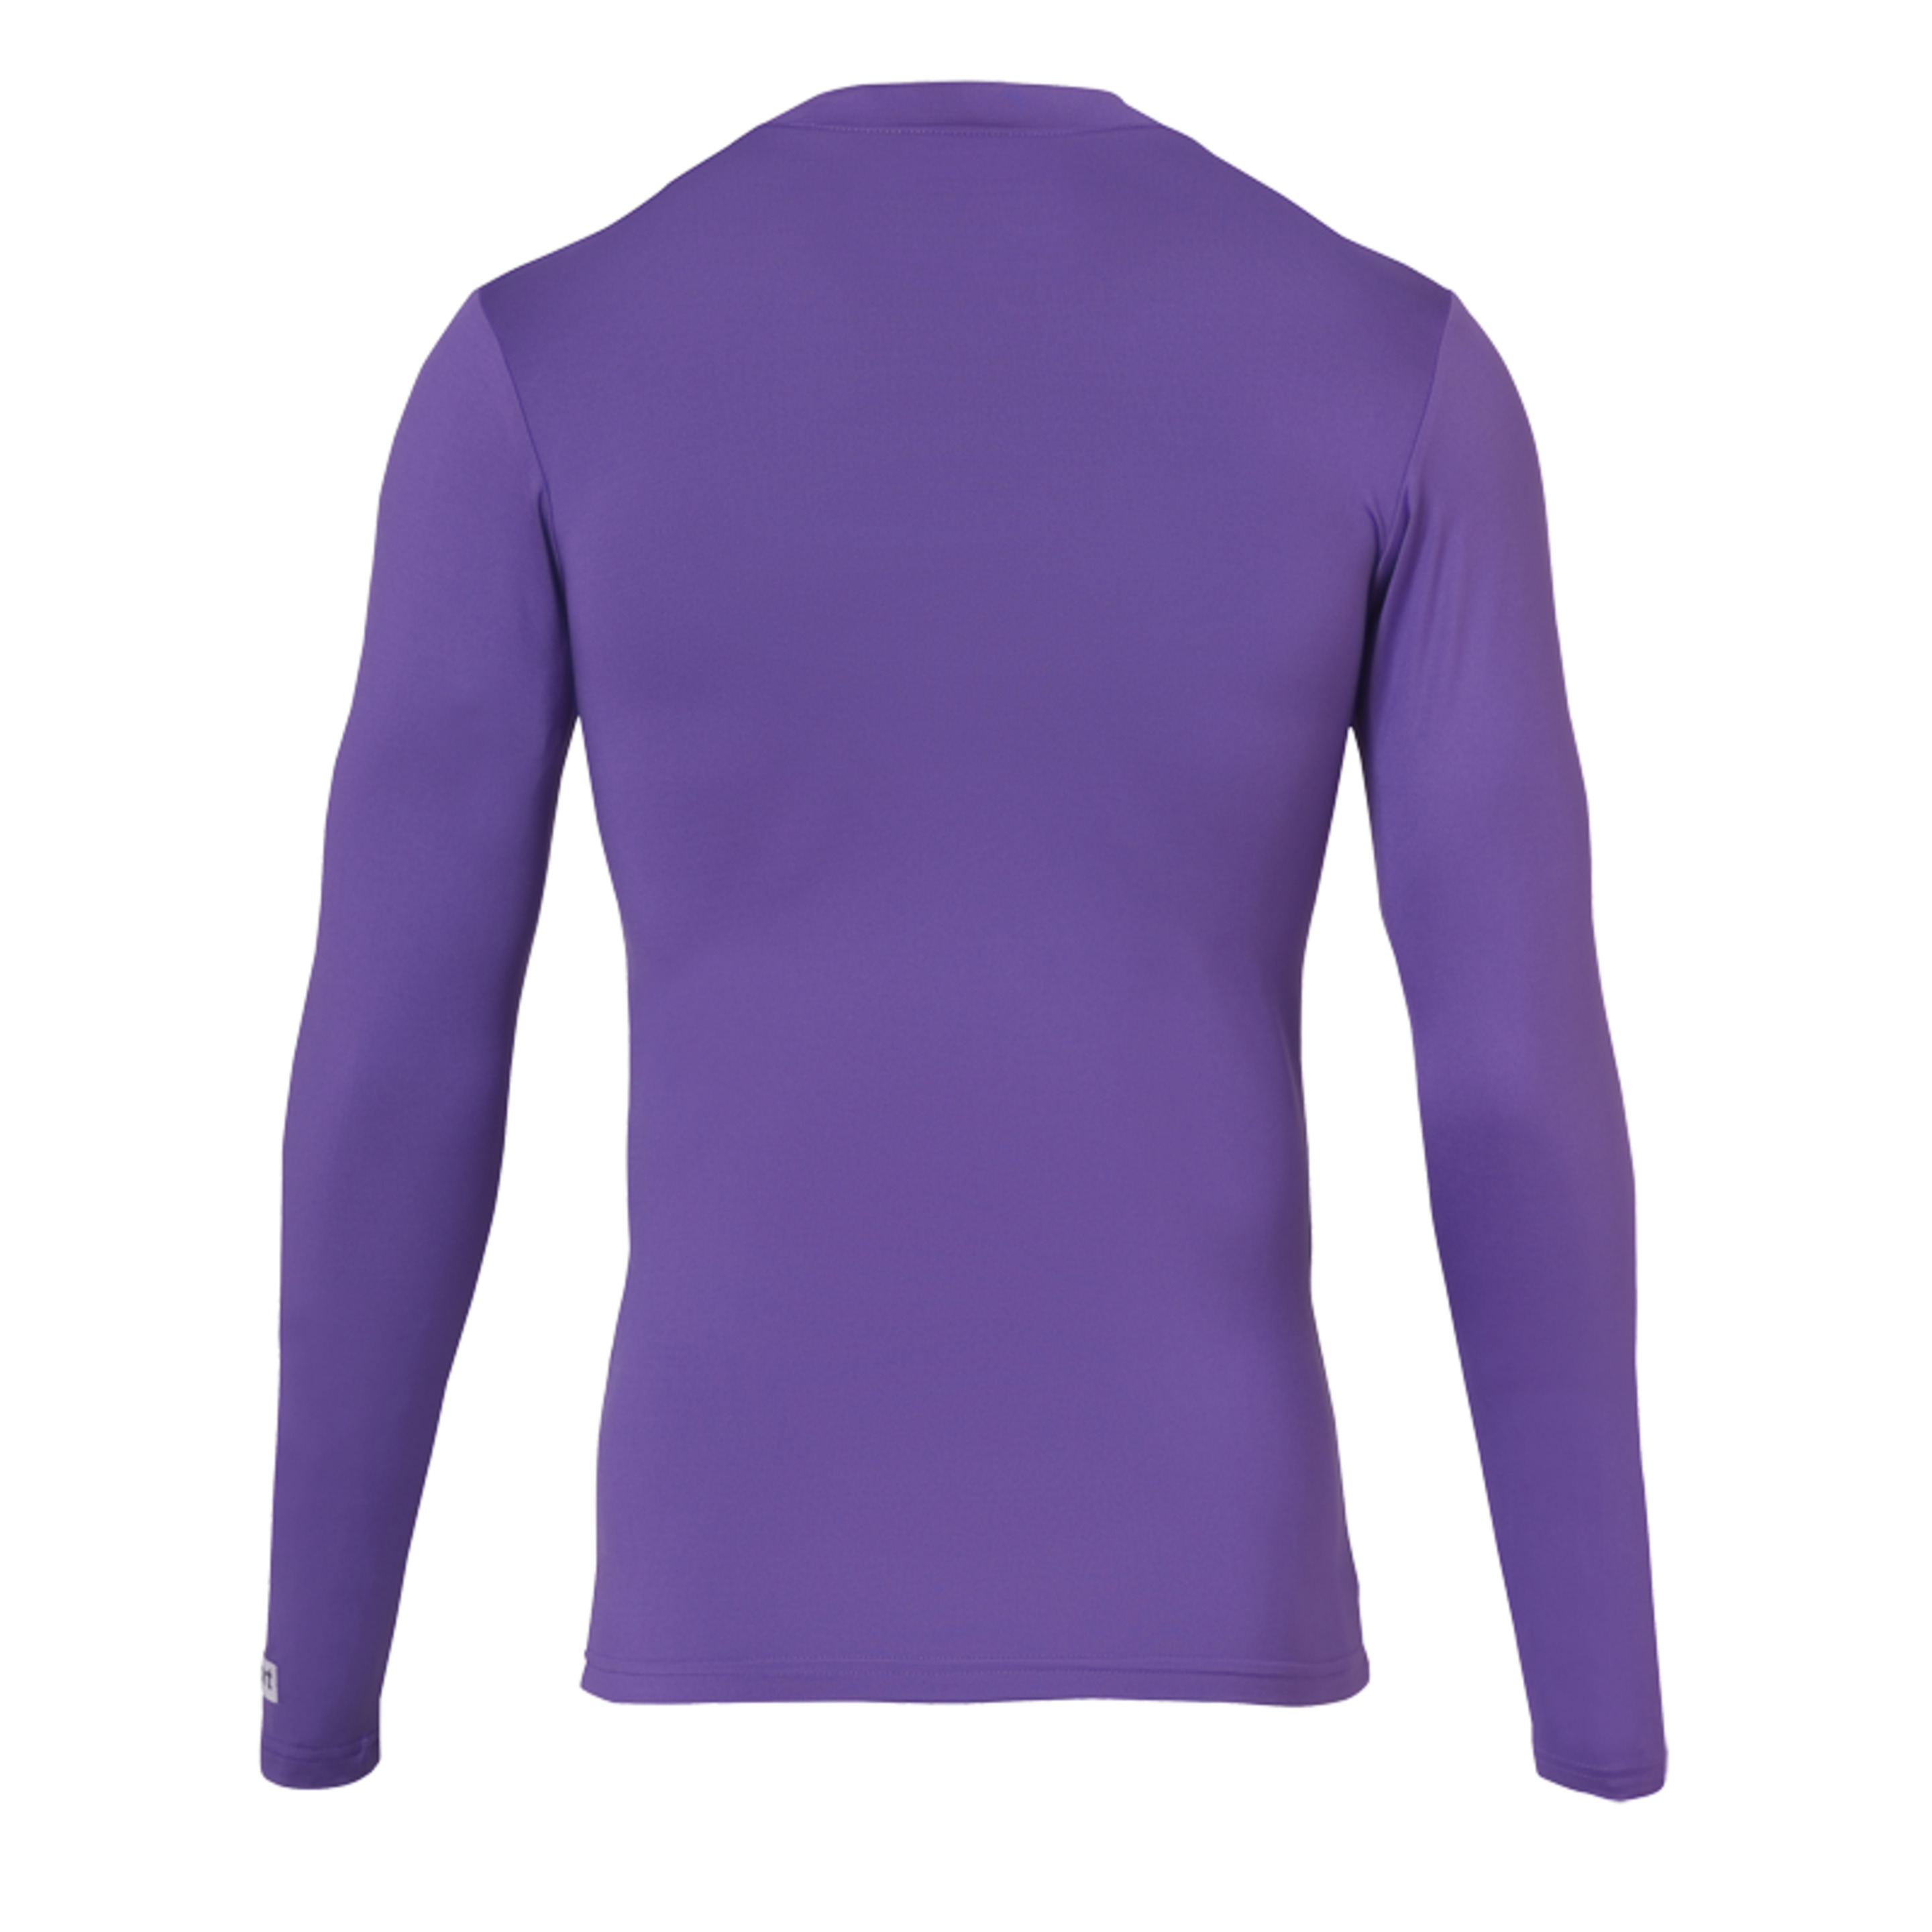 Uhlsport Baselayer Shirt Ls Purple Uhlsport